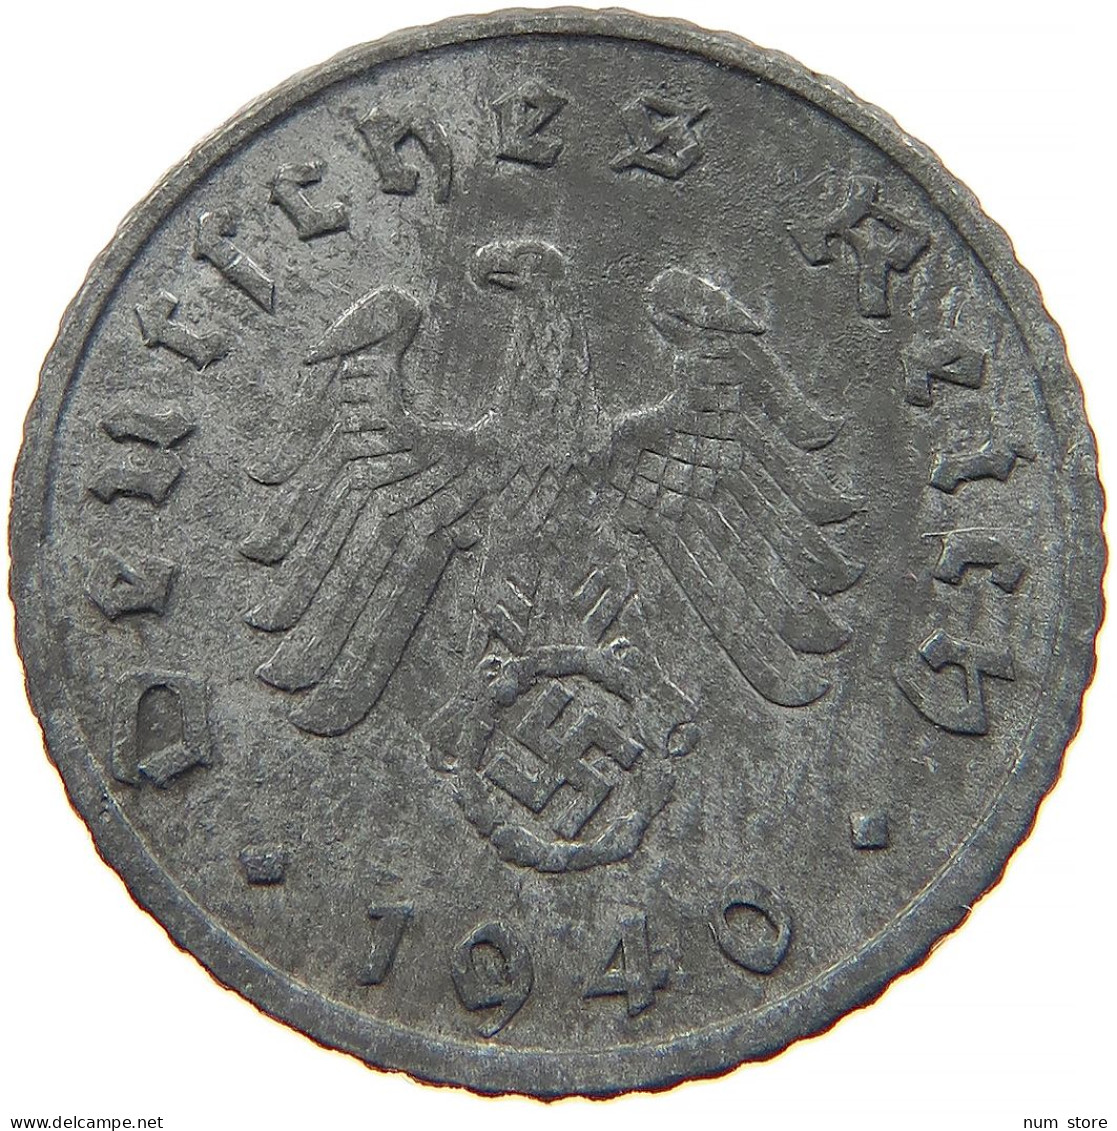 GERMANY 5 REICHSPFENNIG 1940 F #s091 0883 - 5 Reichspfennig